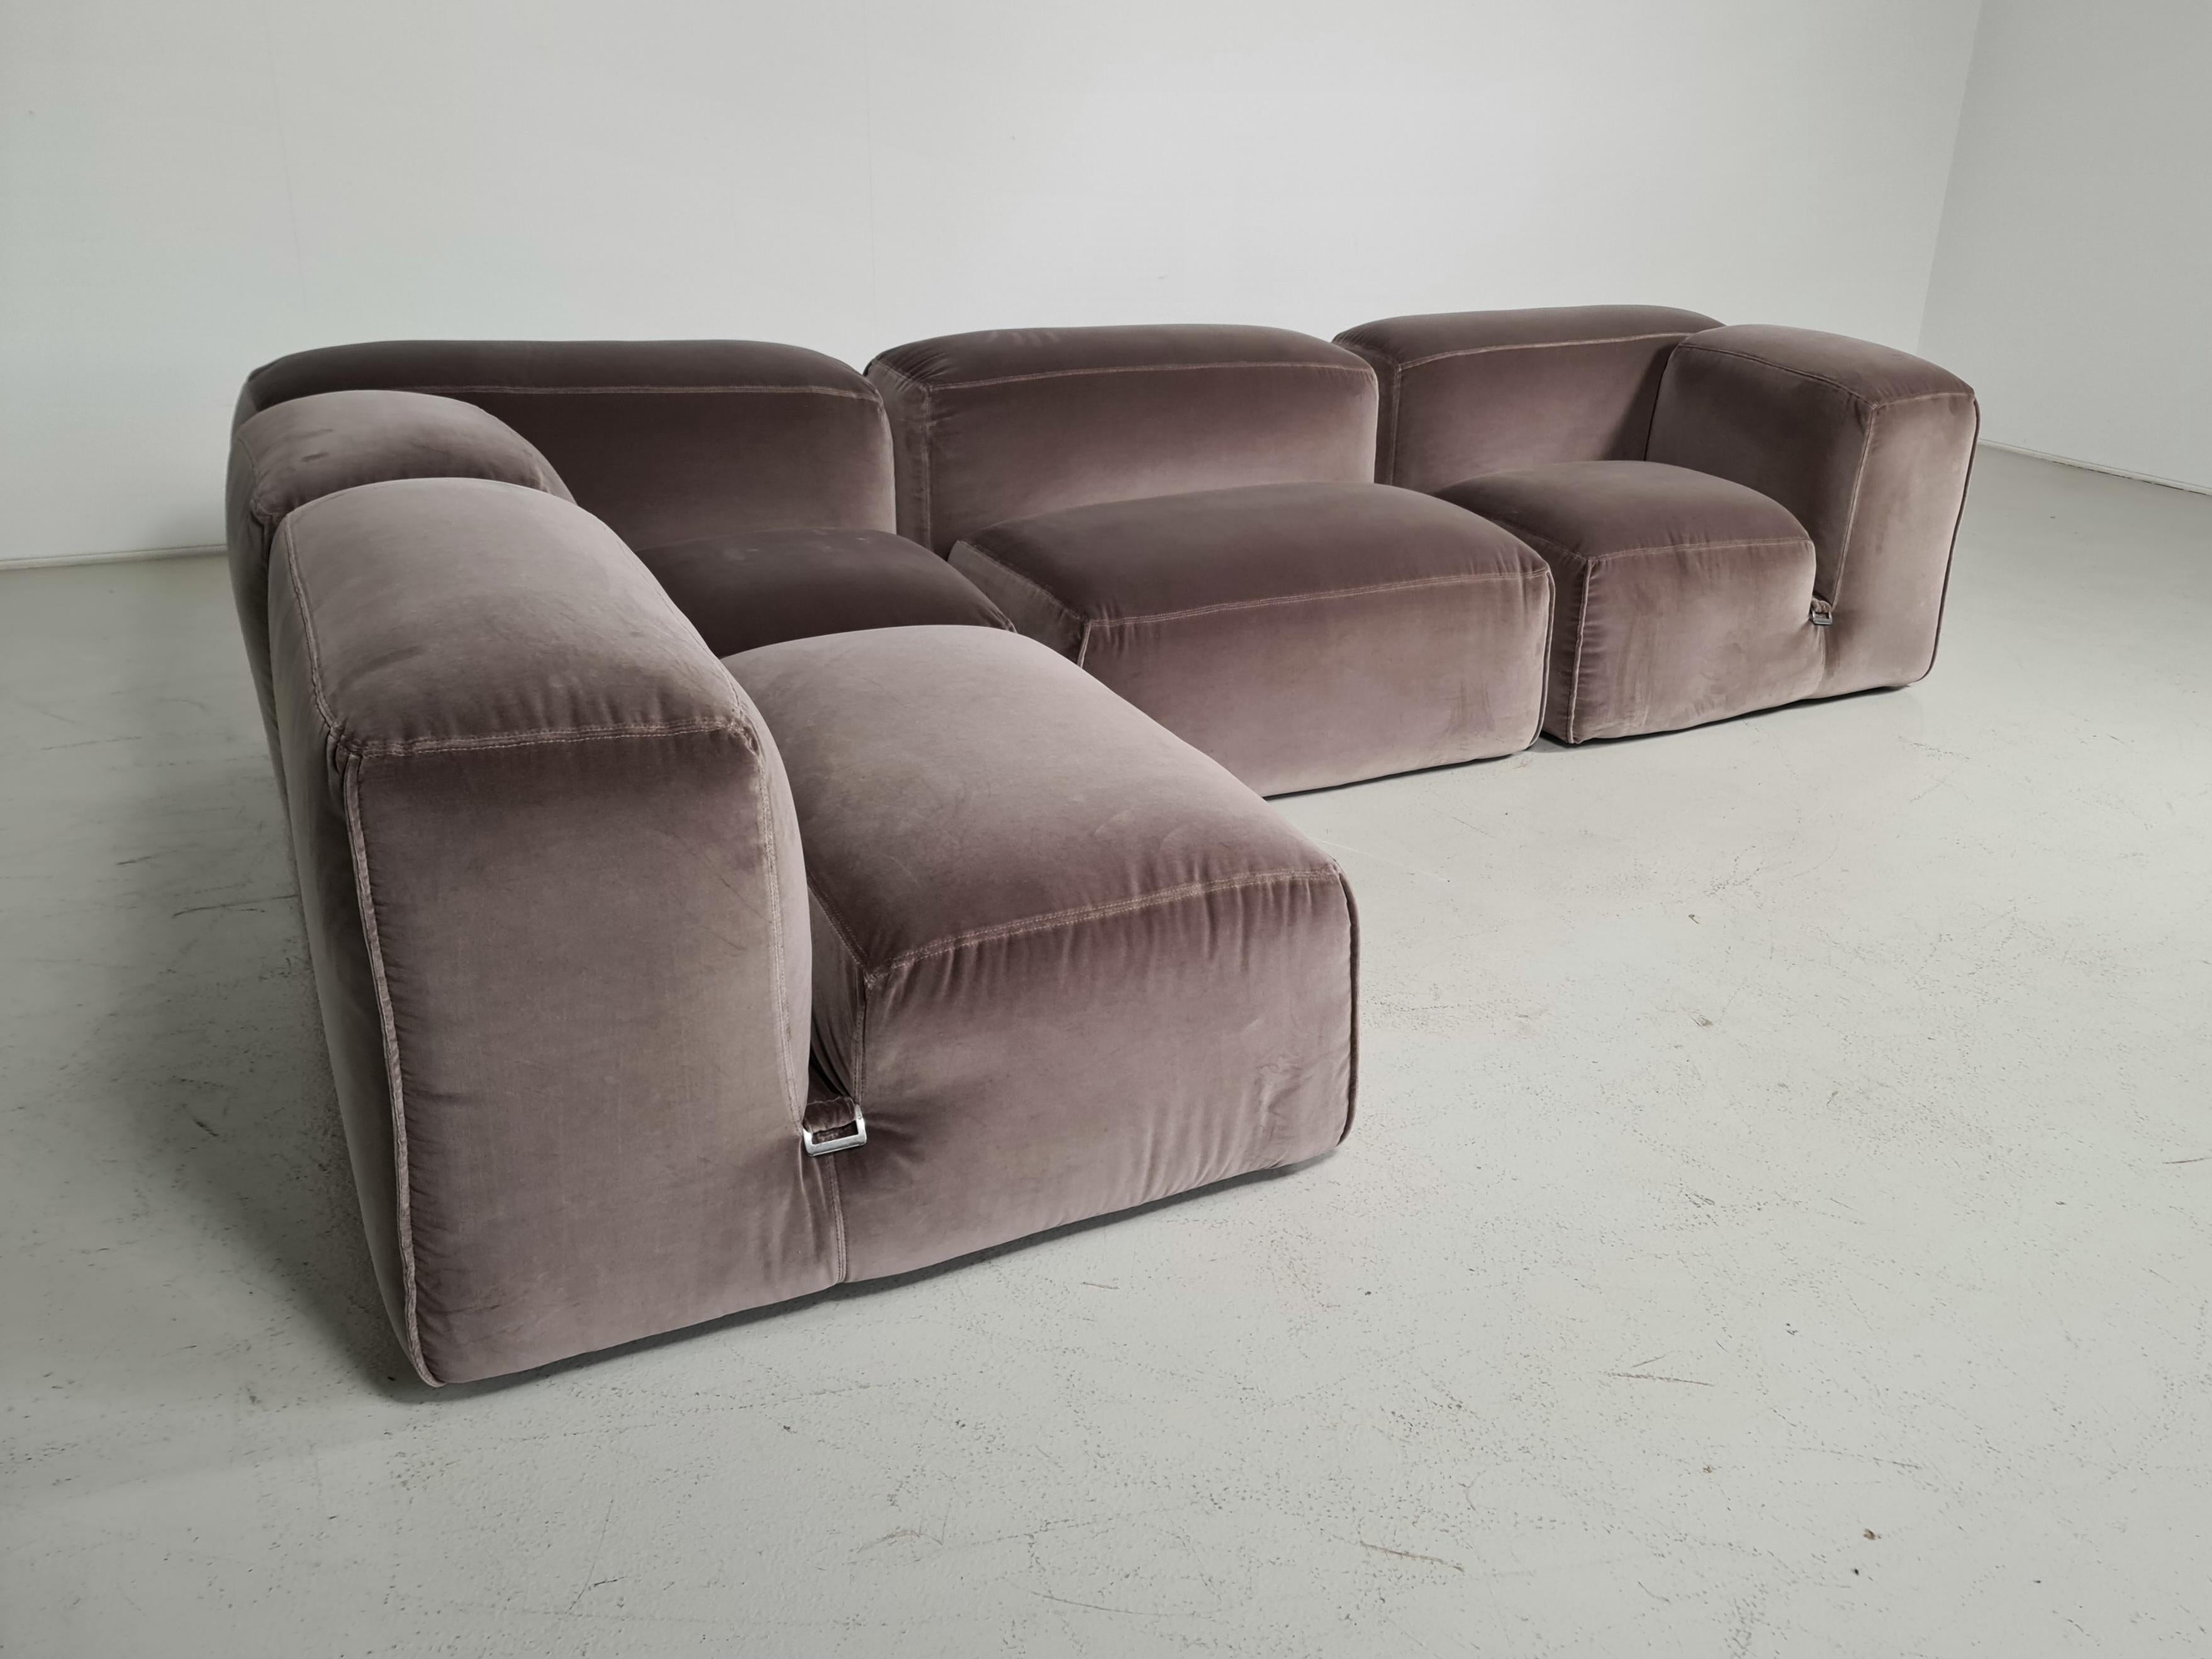 Velvet Le Mura 4-Seater Sofa in beige/grey velvet by Mario Bellini for Cassina, 1970s For Sale